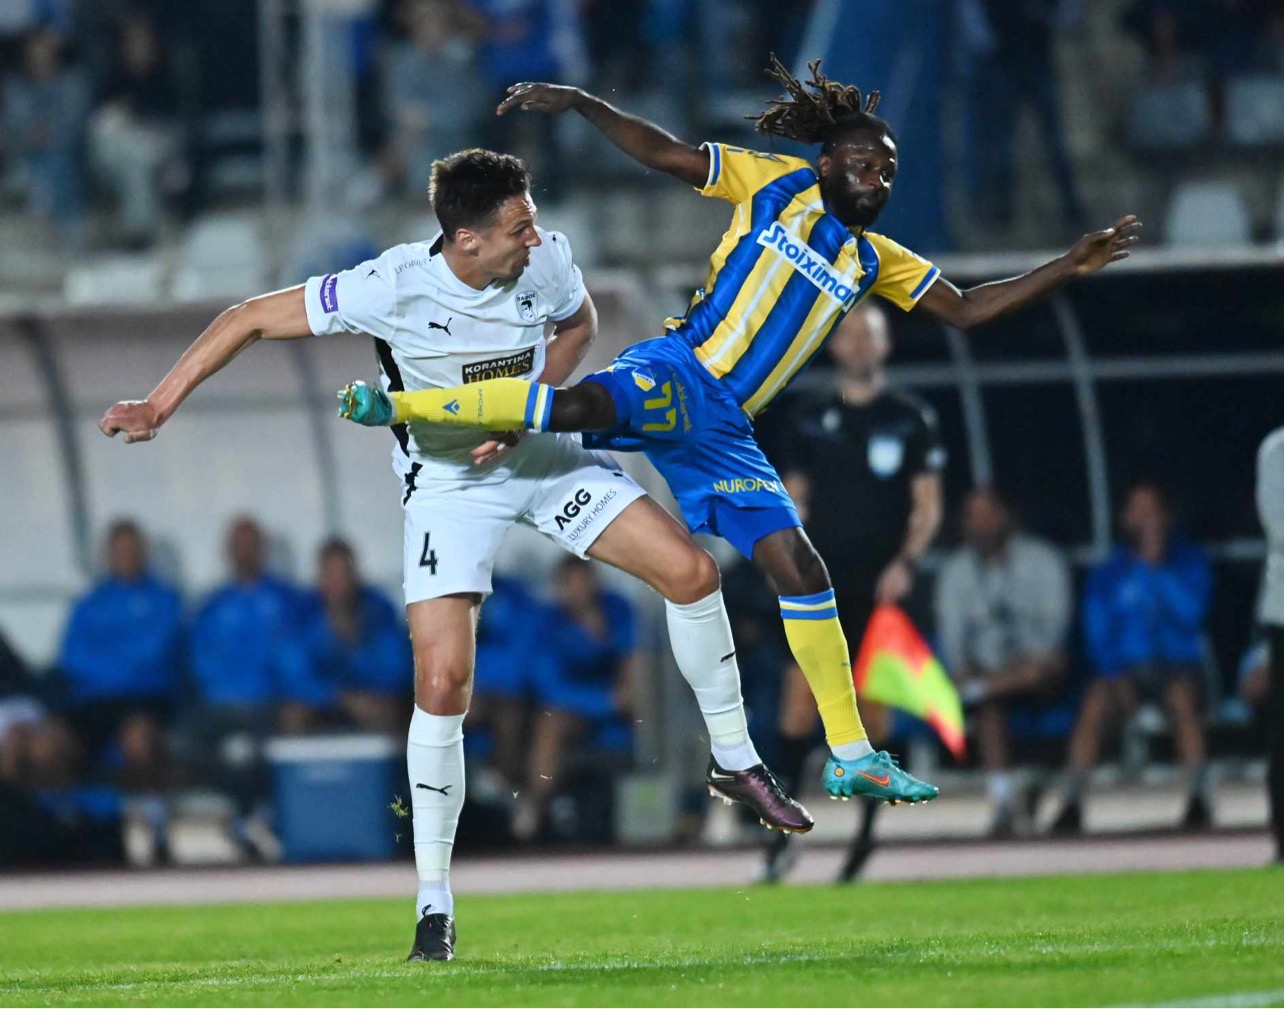 ΑΠΟΕΛ-ΠΑΦΟΣ FC 1-0: Πιο κοντά στον τίτλο οι γαλαζοκίτρινοι (ΒΙΝΤΕΟ)